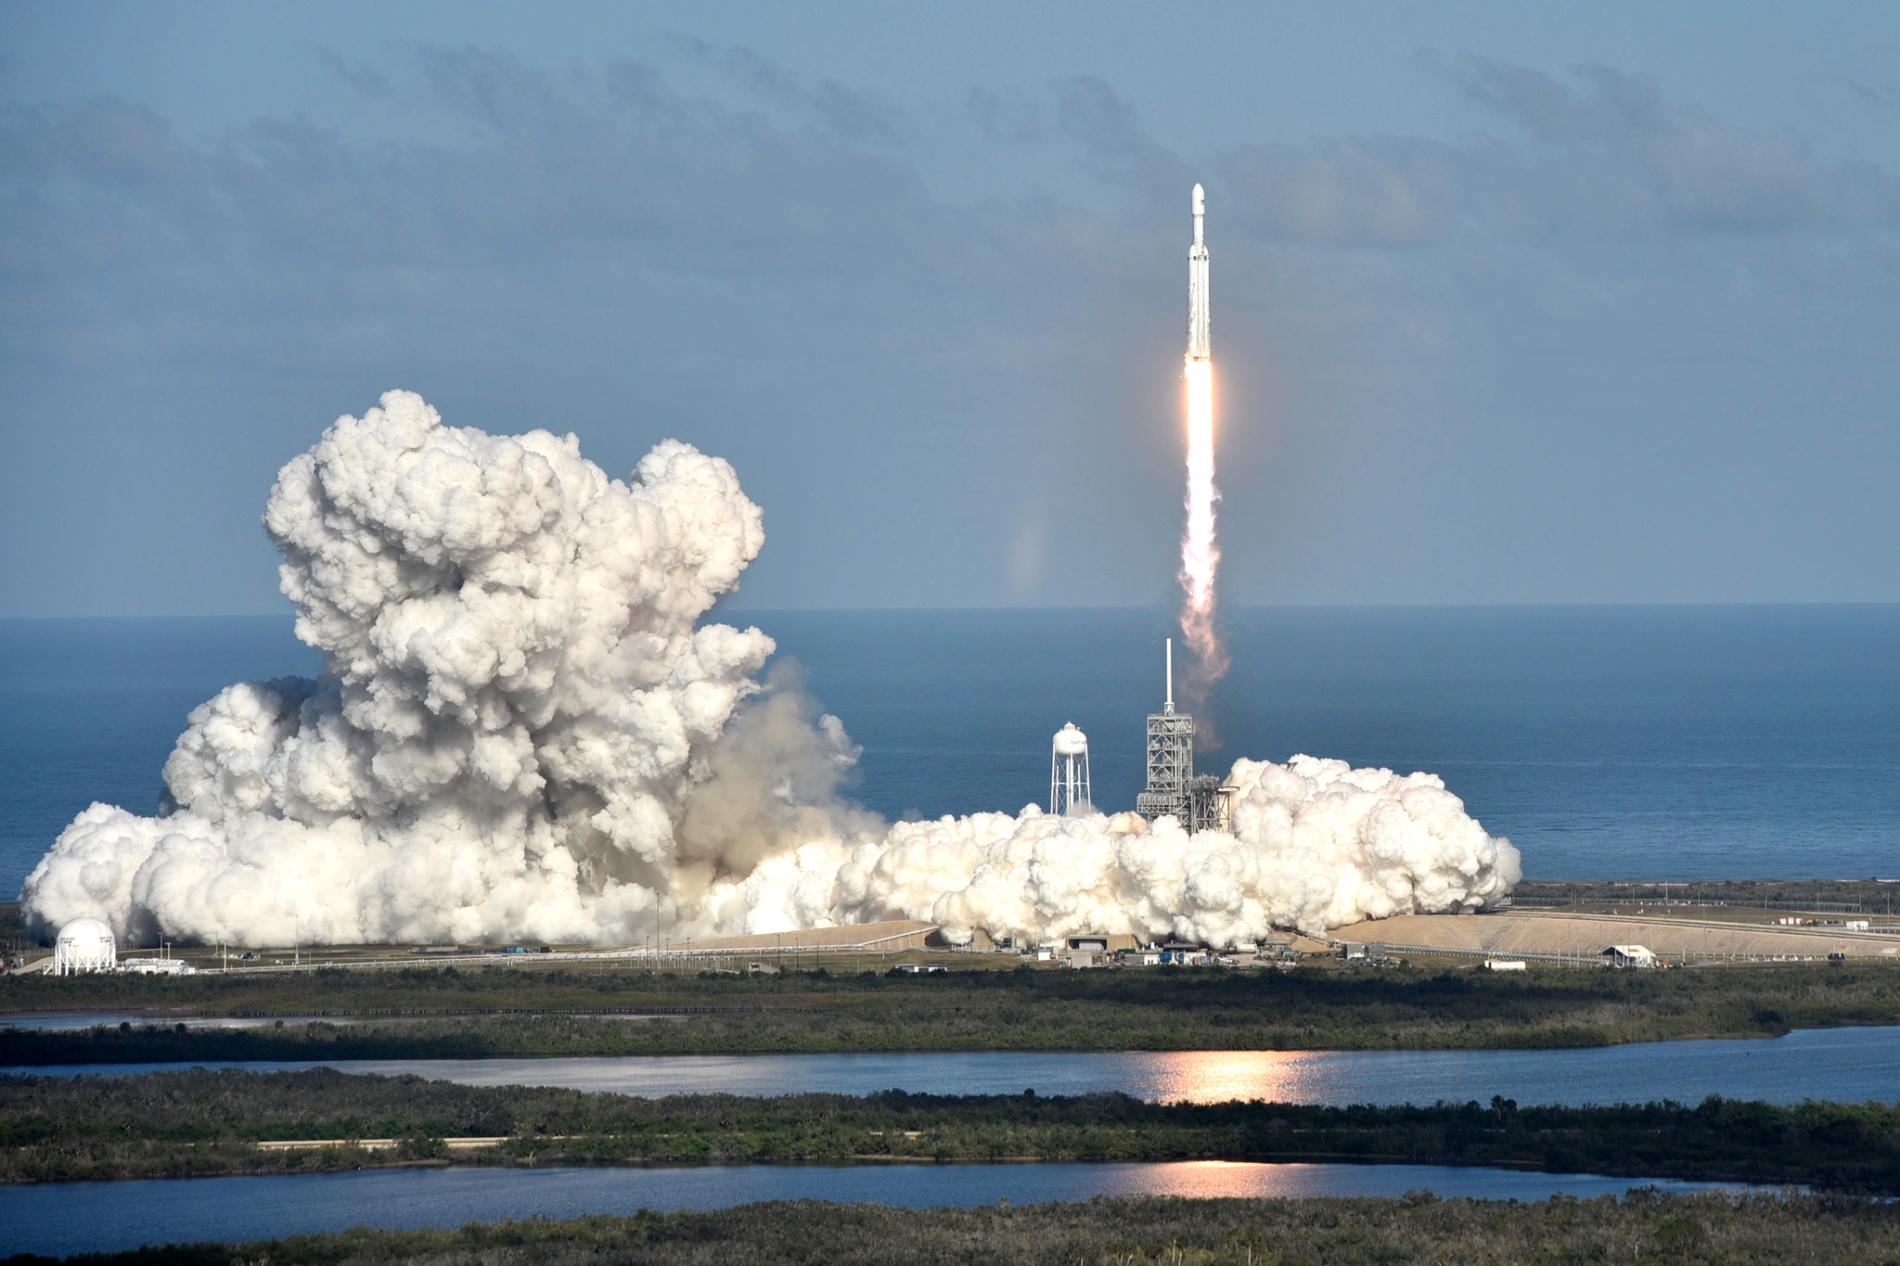 Oprócz egzemplarza rakiety Falcon Heavy wysłała w kosmos tajny ładunek